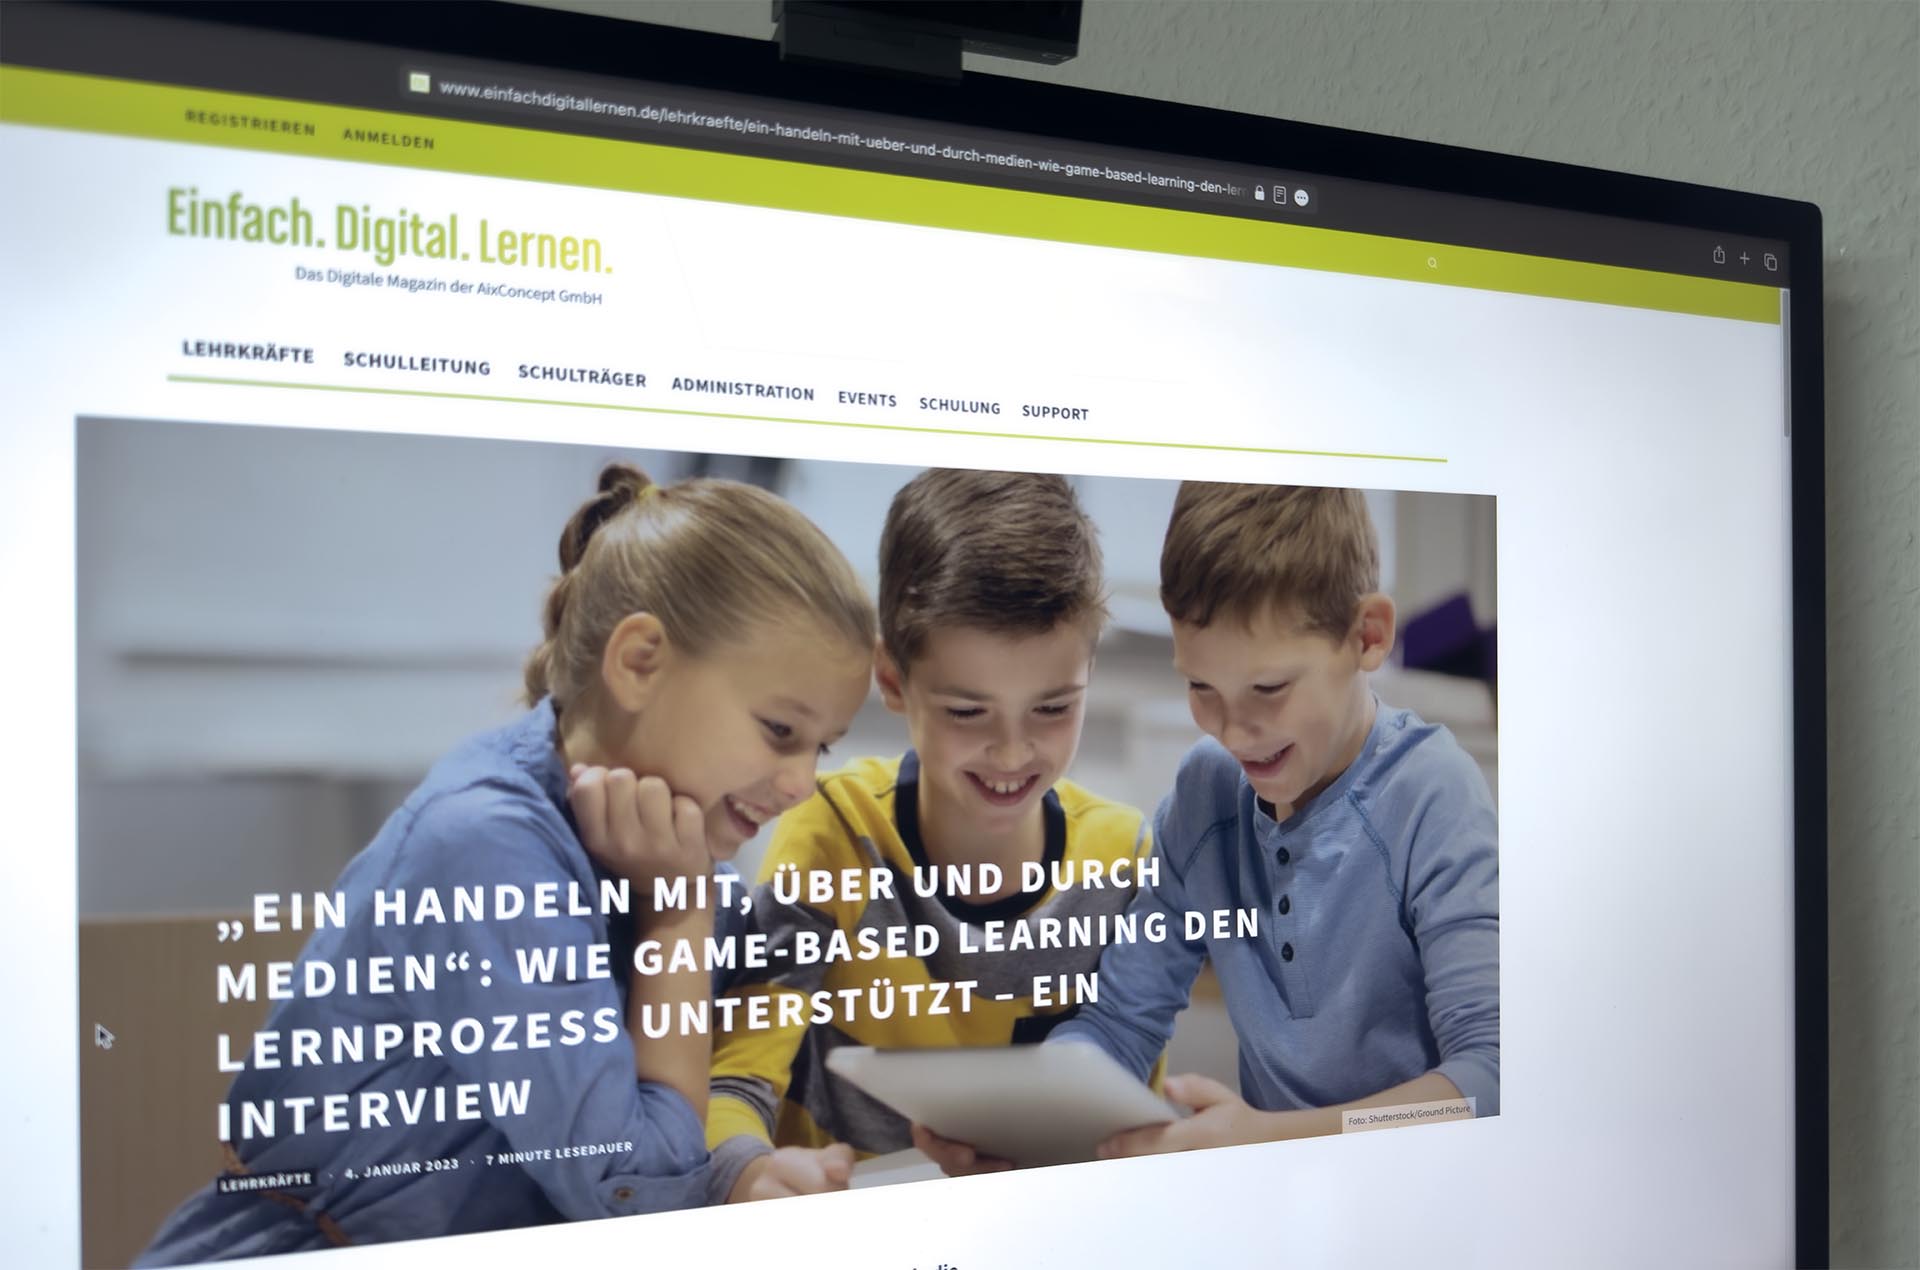 Interview zum Thema Game-based Learning mit Einfach.Digital.Lernen.